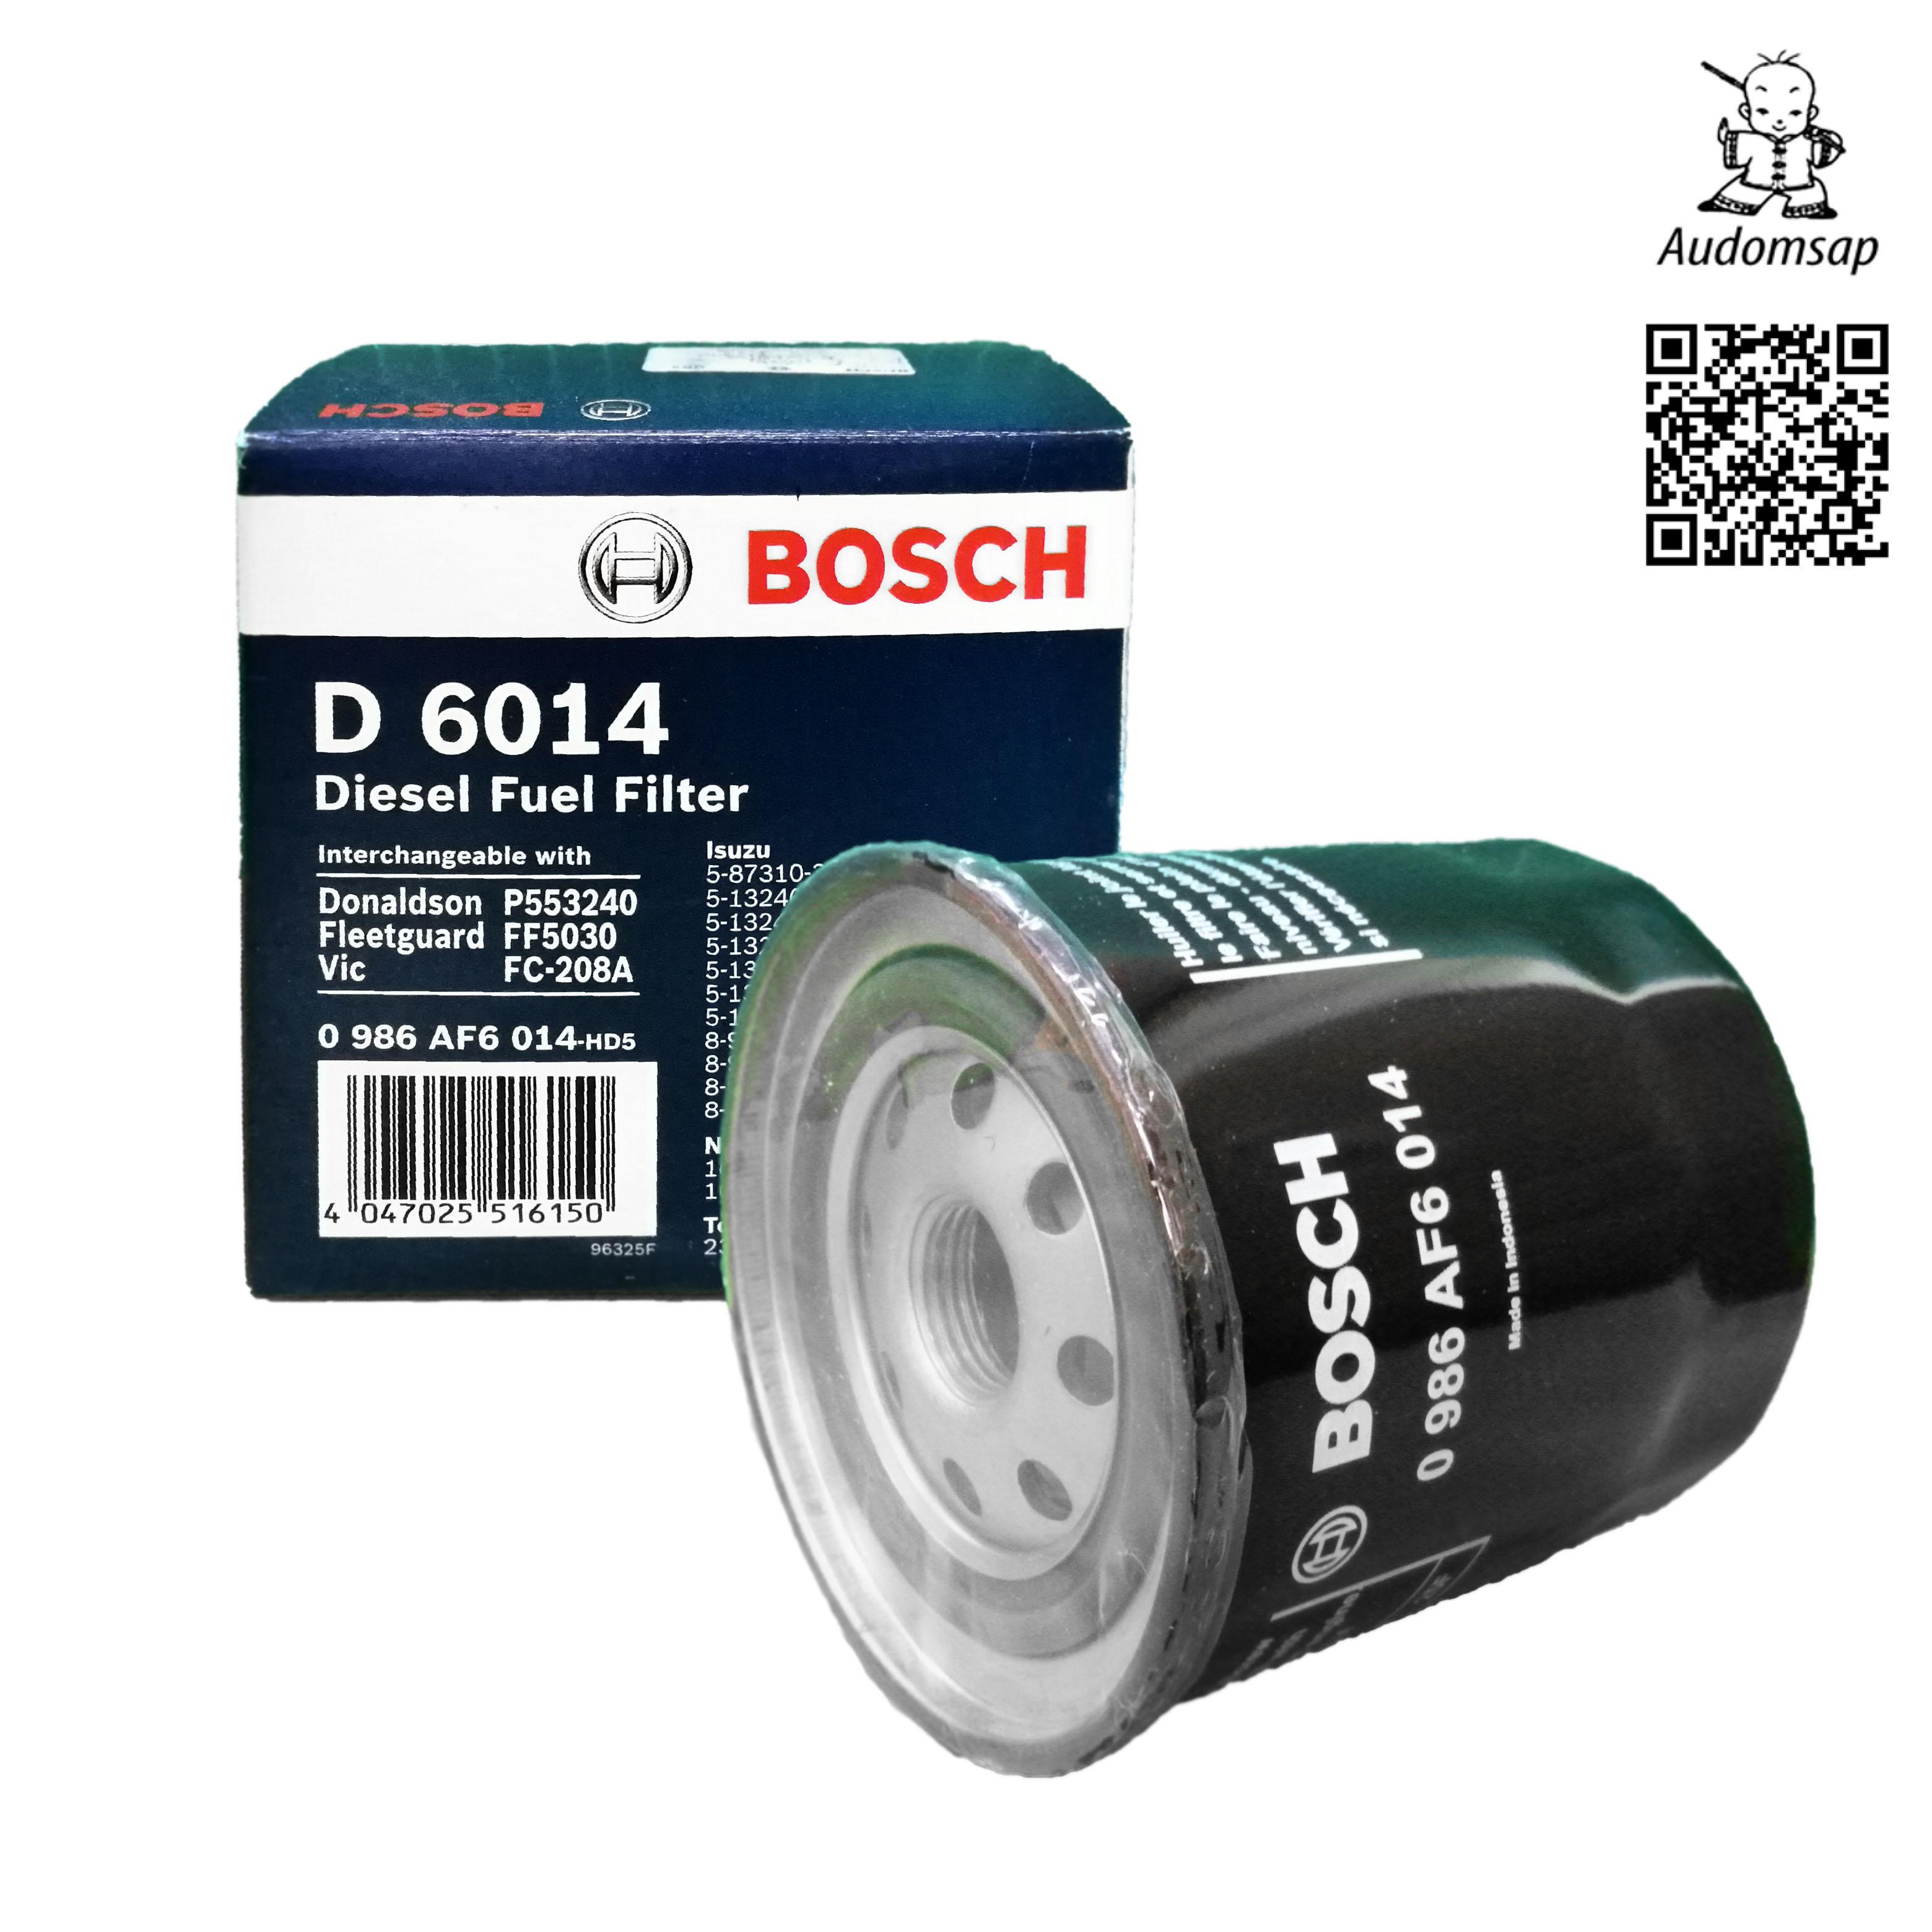 ไส้กรองน้ำมันเชื้อเพลิง Bosch Fuel Filter สำหรับ Isuzu TFR (ลูกเหล็กสั้น) เครื่องยนต์ 4JA1, 4JB1, 4JB1-T (8-94448-984-0, 8-94448-993-1, 5-87310-335-0, 8-94414-613-0, 8-94414-796-3, 8-94167-400-1, 8-97172-549-0 / 1, 5-87610-011-0)